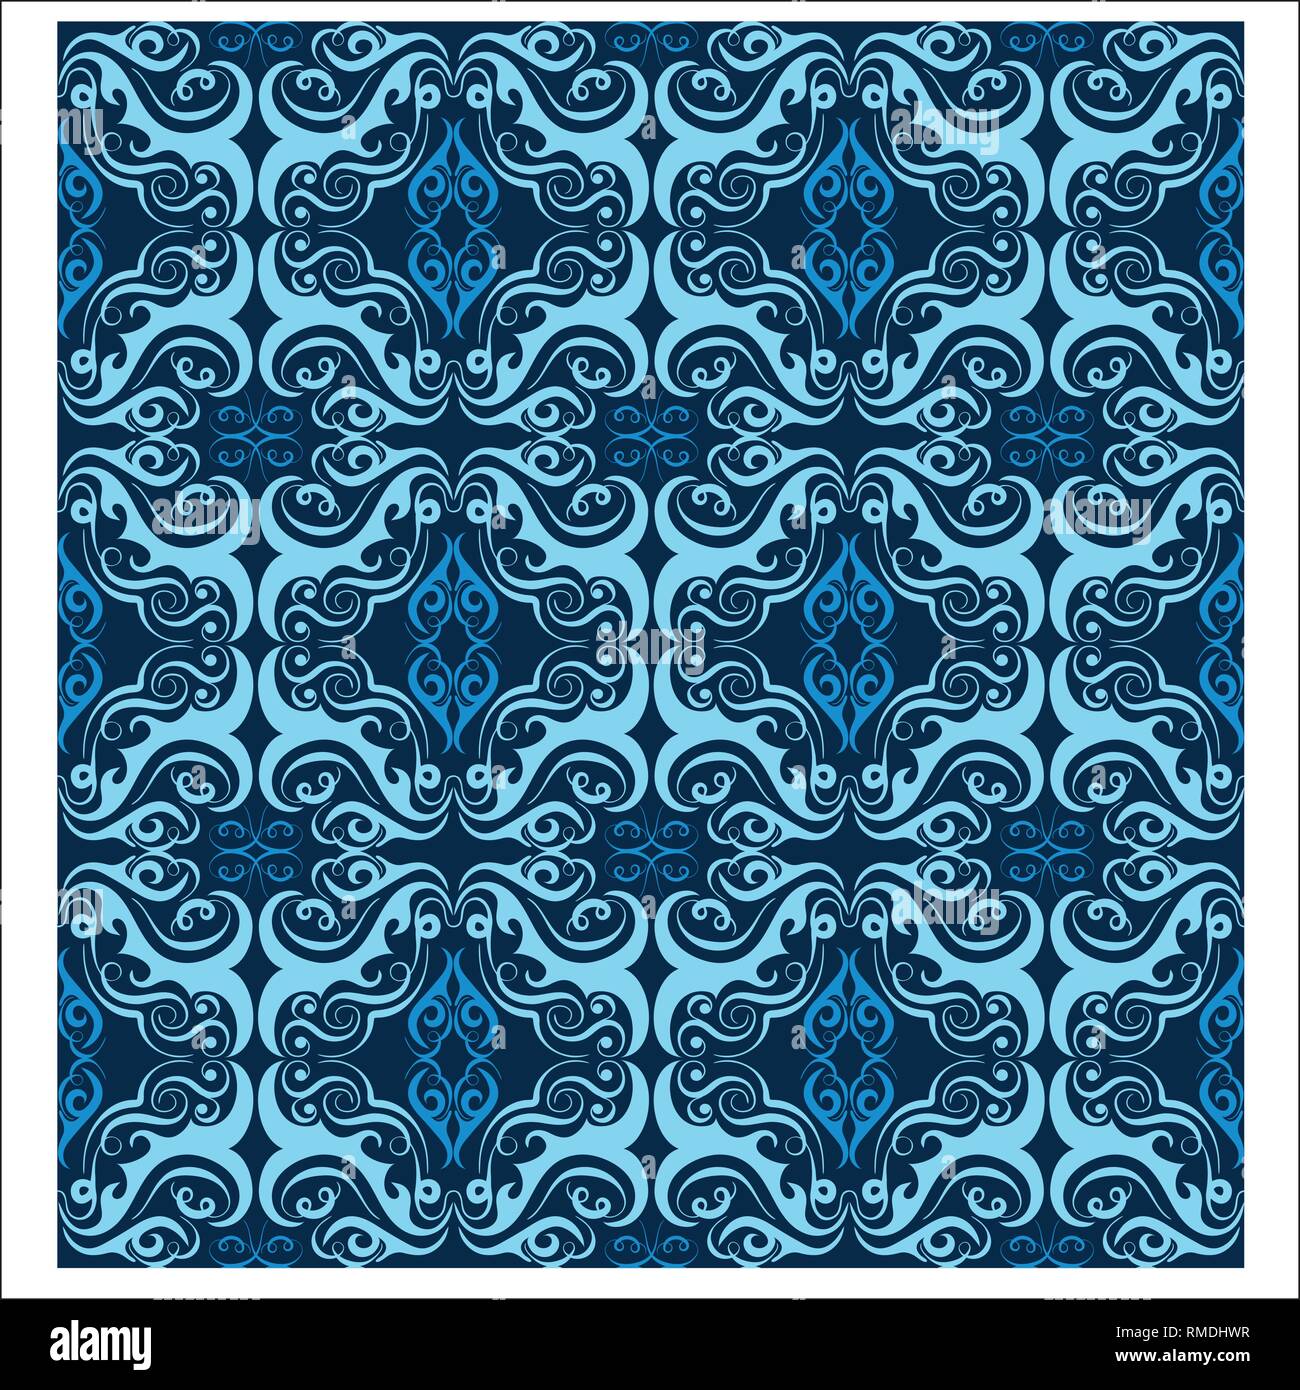 Batik Design Patterns sind die gleichen für Architektur Design, Hintergrund, Home Decor, Tapeten, Print Design, und andere Designs Stock Vektor